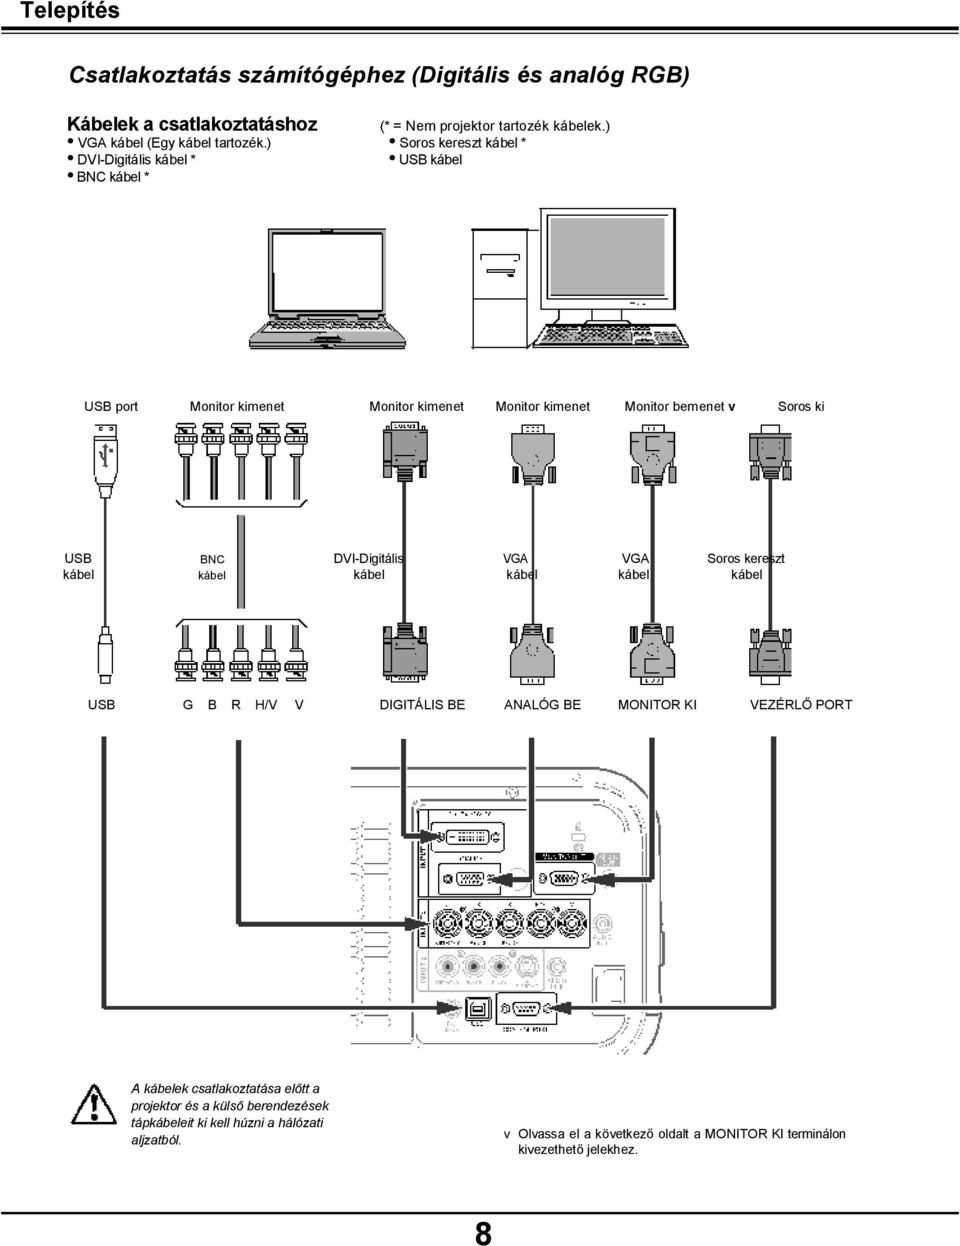 ) USB kábel USB port Monitor kimenet Monitor kimenet Monitor kimenet Monitor bemenet v Soros ki USB BNC DVI-Digitális VGA VGA Soros kereszt kábel kábel kábel